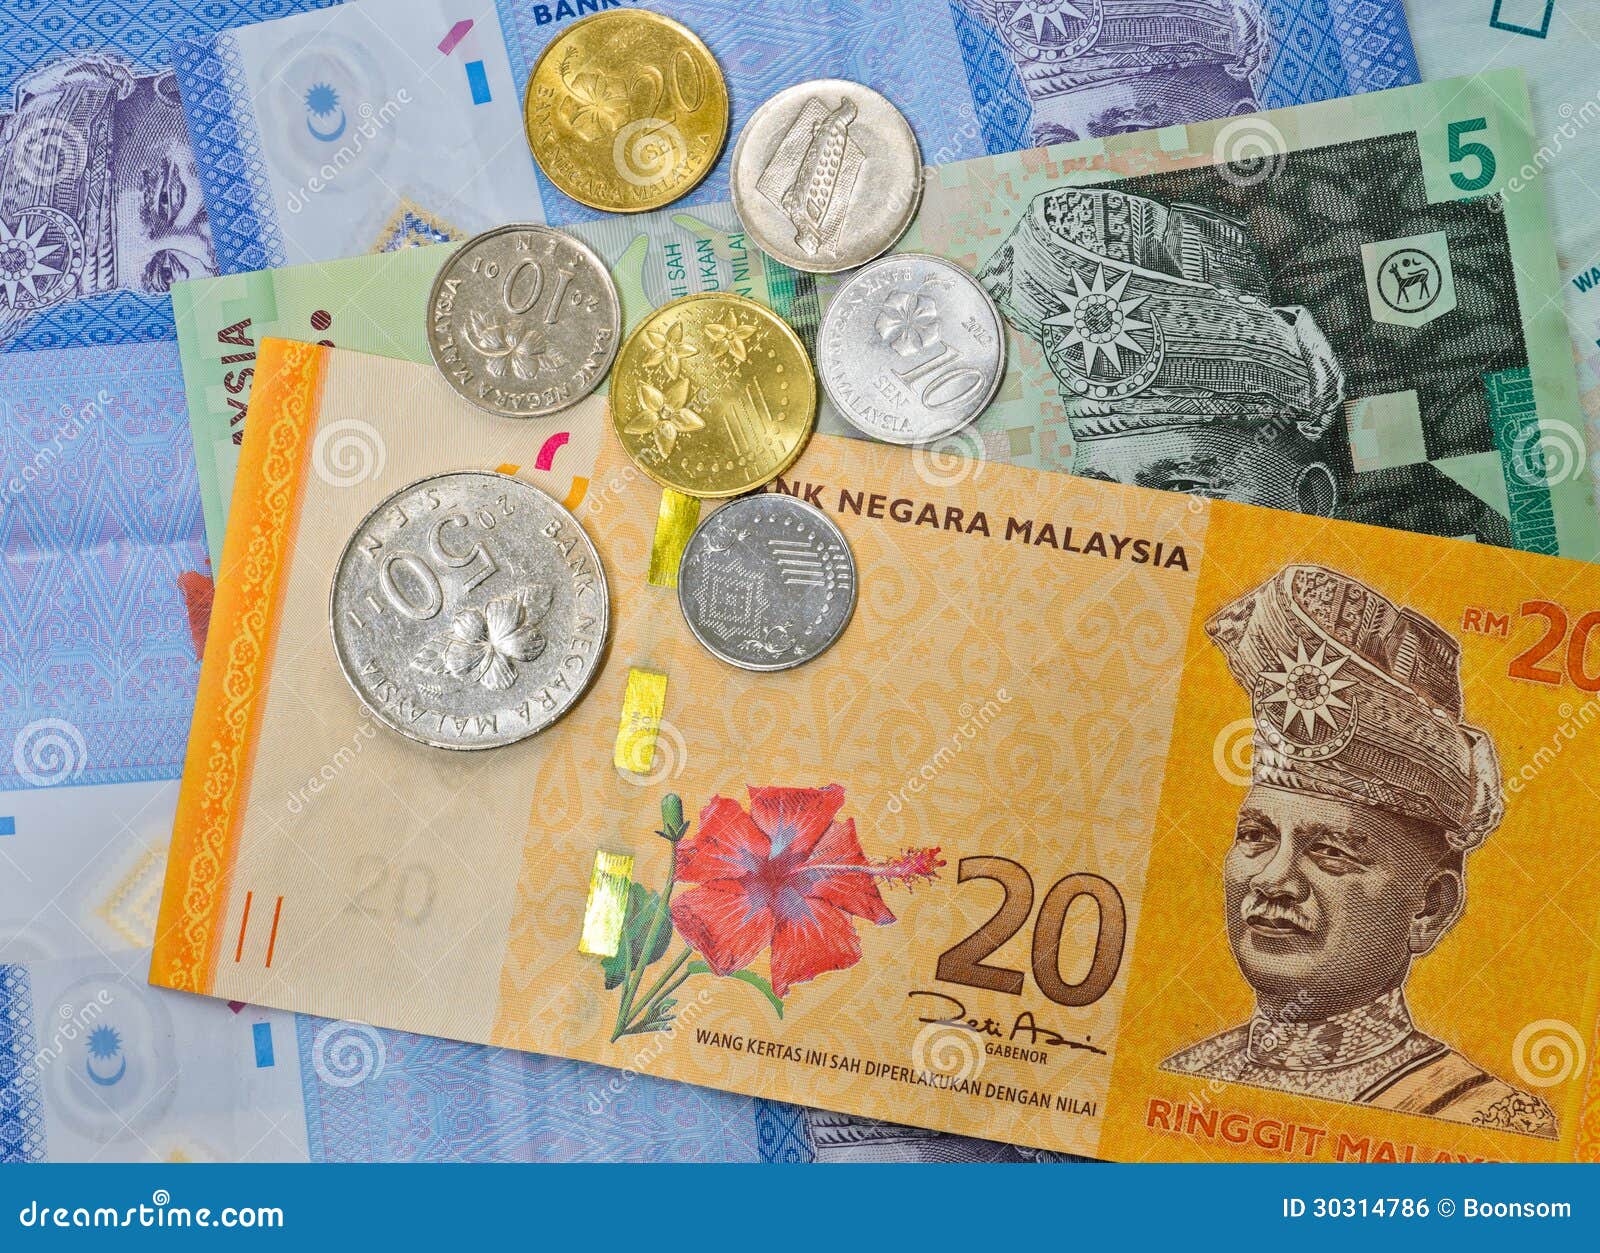 好品马来西亚1元硬币一组-价格:30元-se83673010-外国钱币-零售-7788收藏__收藏热线